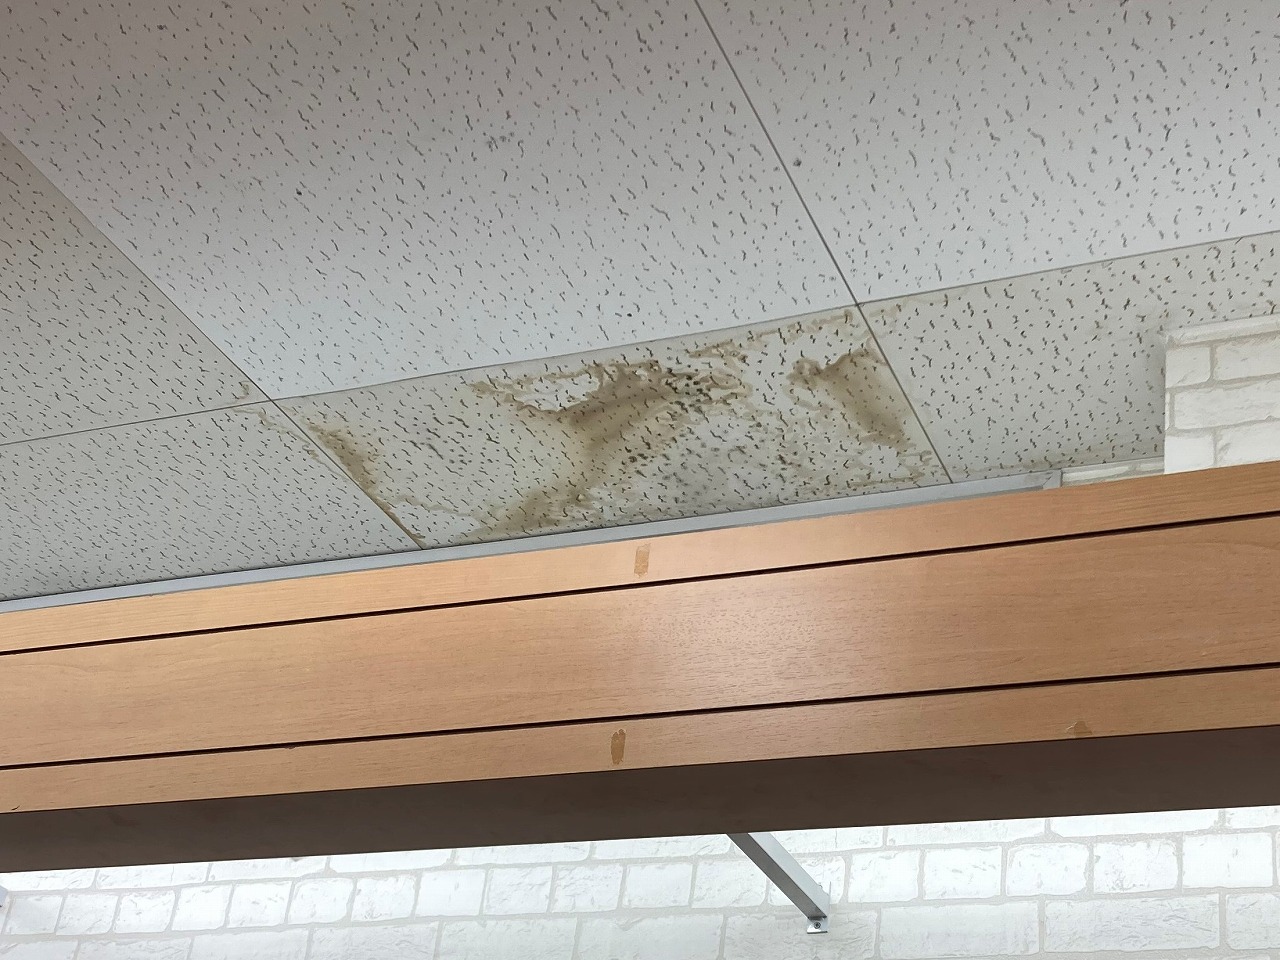 倉敷市水島にある商業施設の天井に発生した雨漏りの調査依頼です